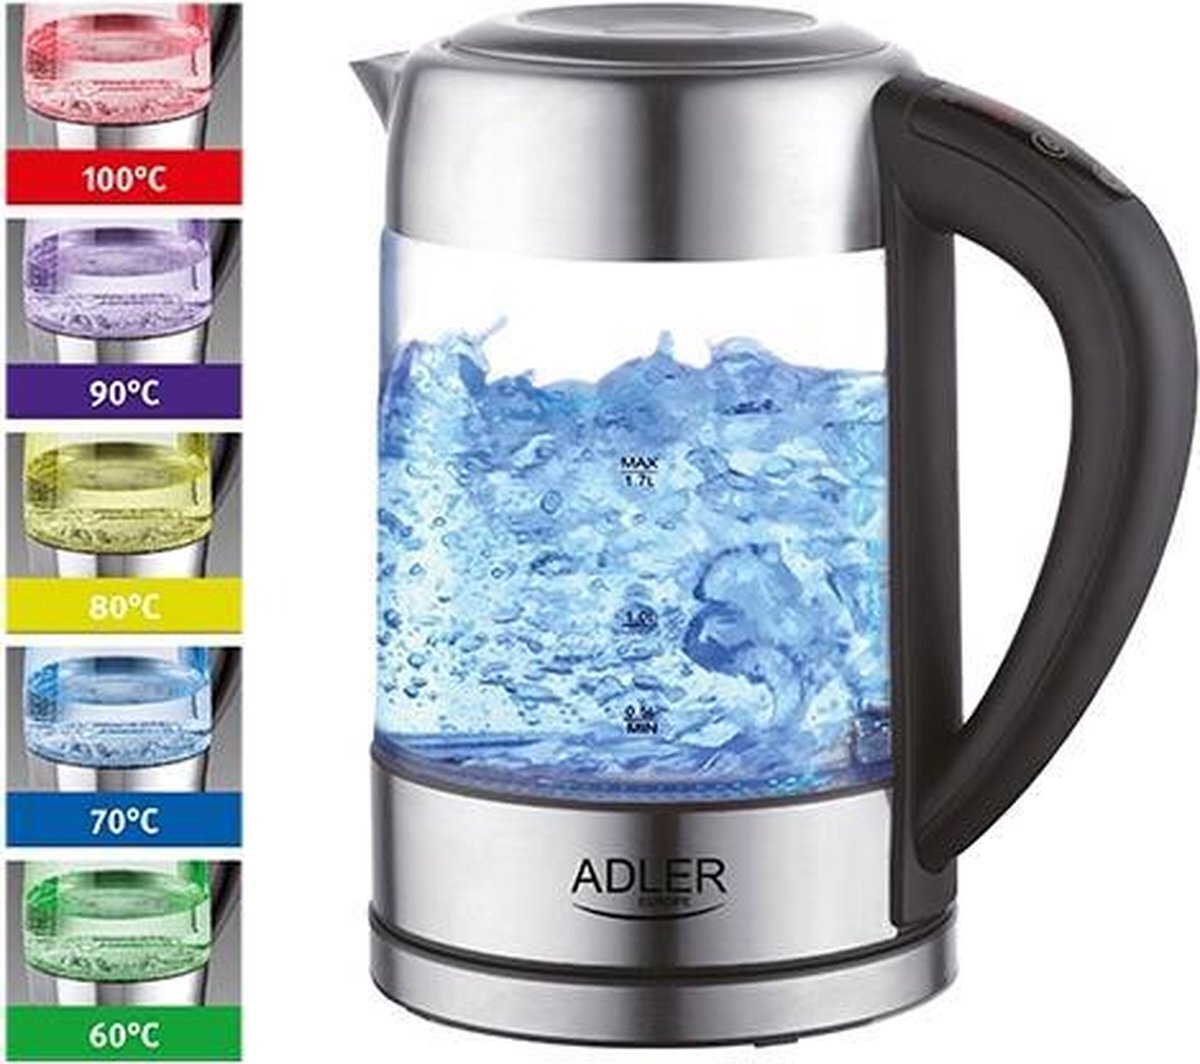 Adler Waterkoker met temperatuur controle - 60-100 graden - 1.7 liter - verschillende kleuren led